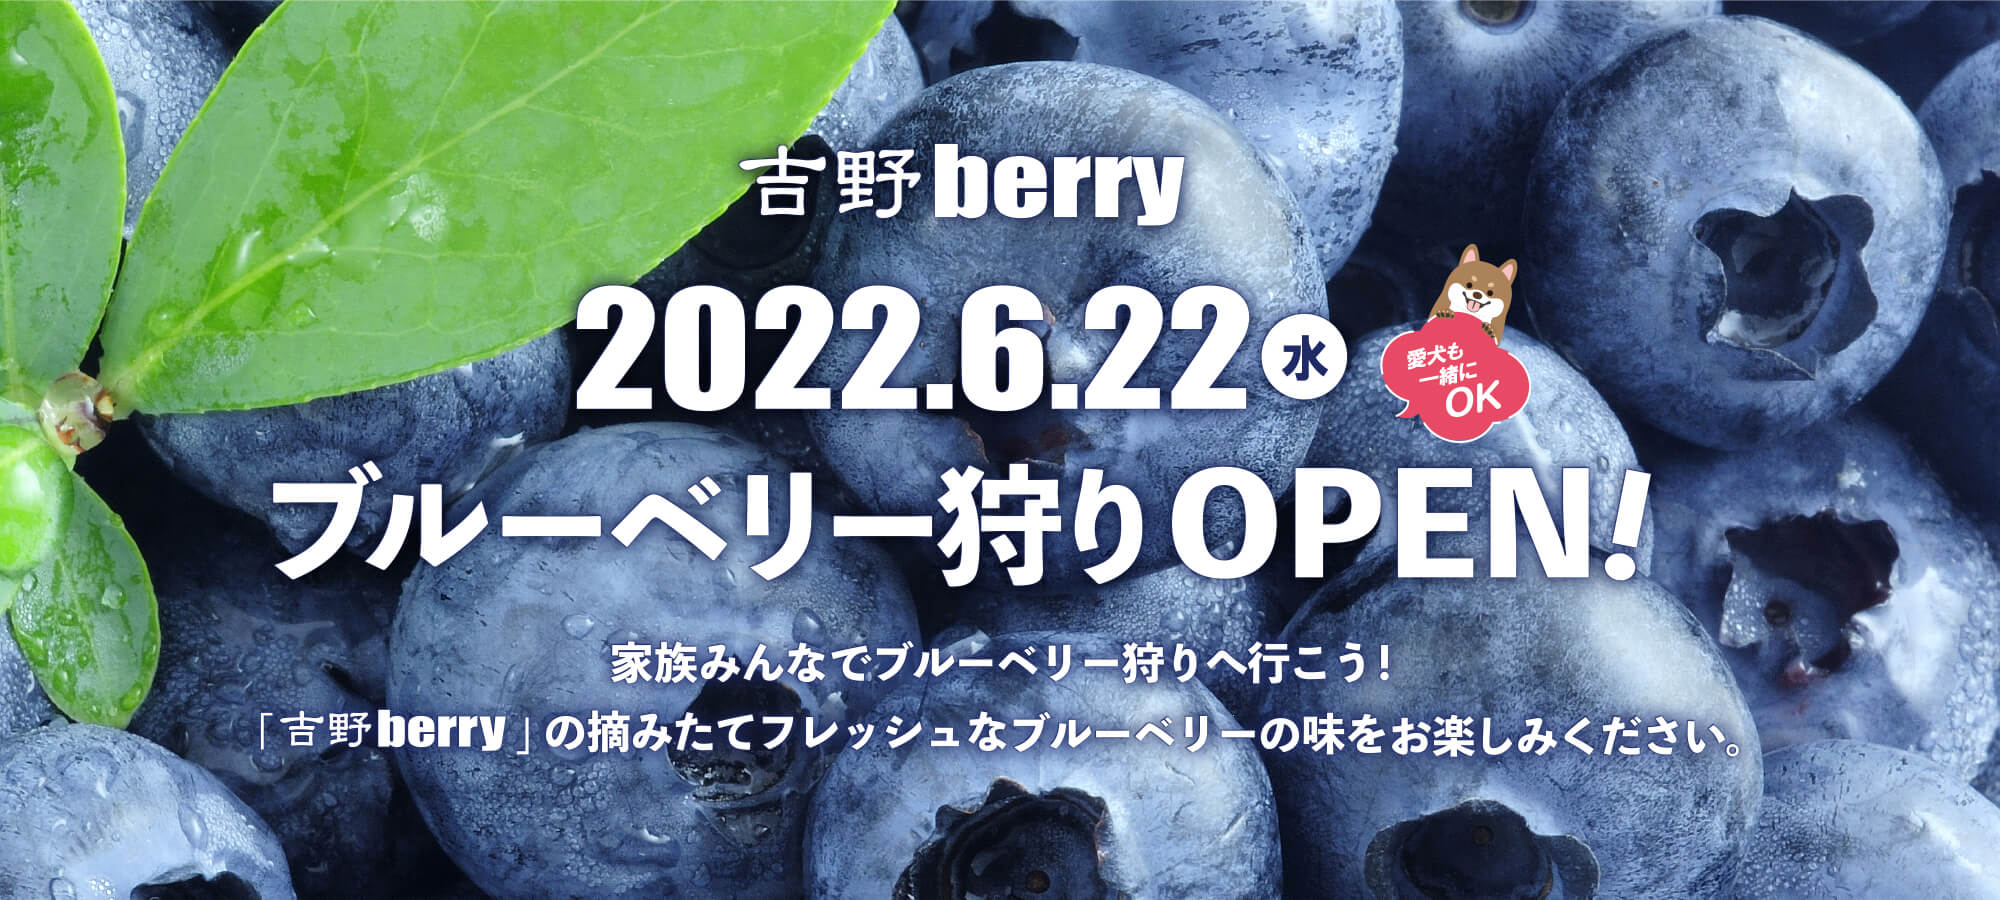 吉野berryブルーベリー2022.6.22OPEN